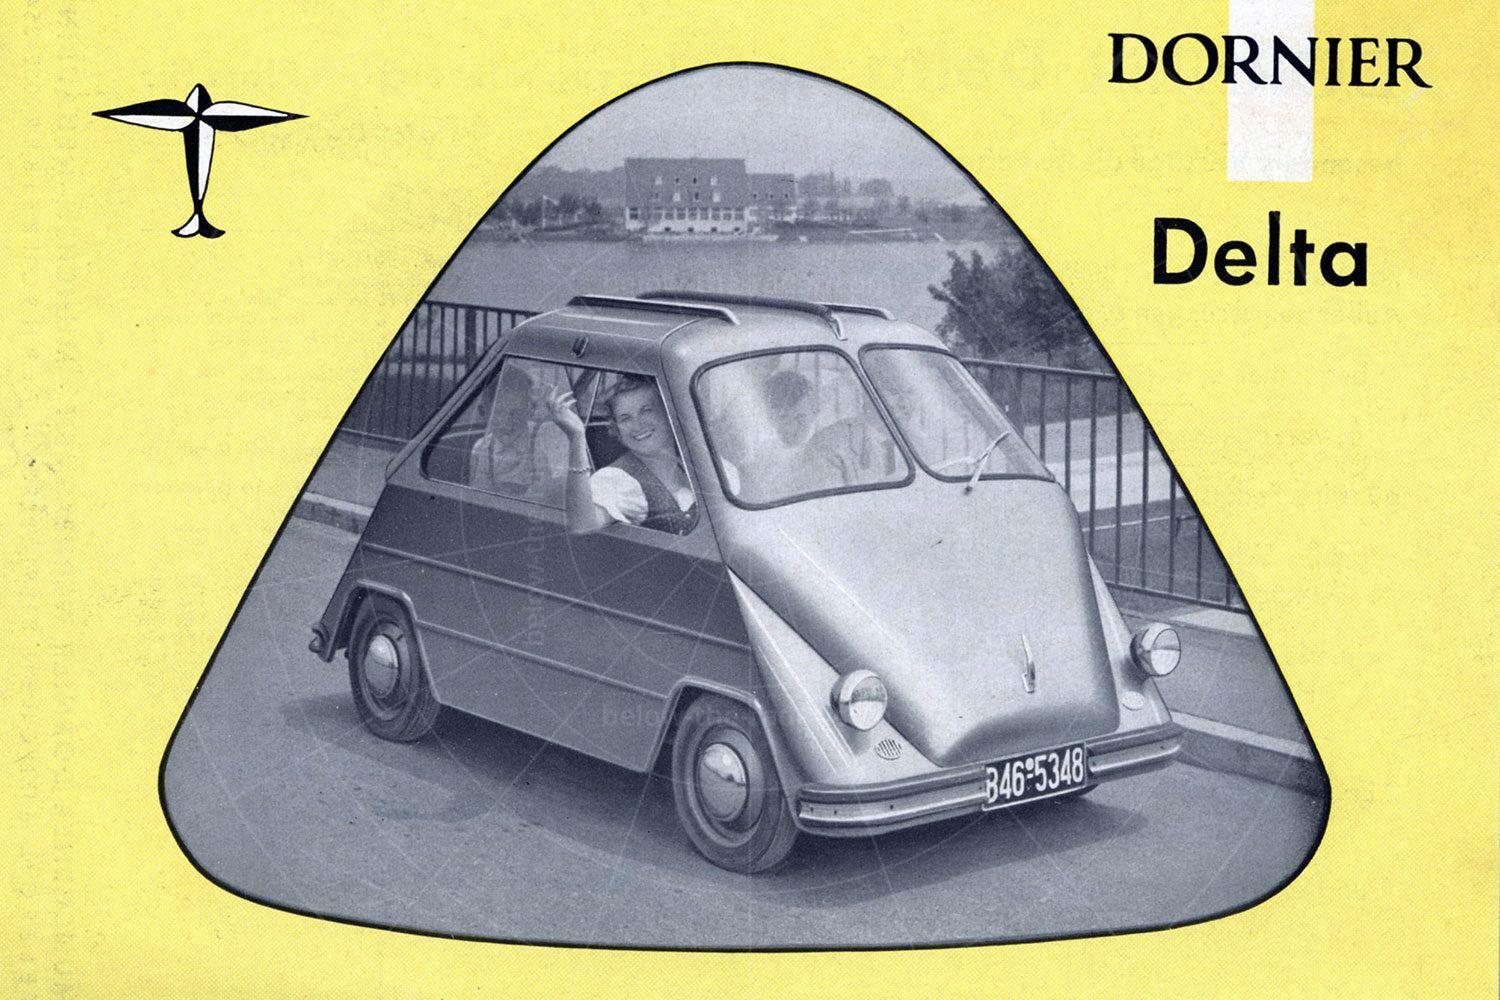 Dornier Delta brochure Pic: magiccarpics.co.uk | Dornier Delta brochure